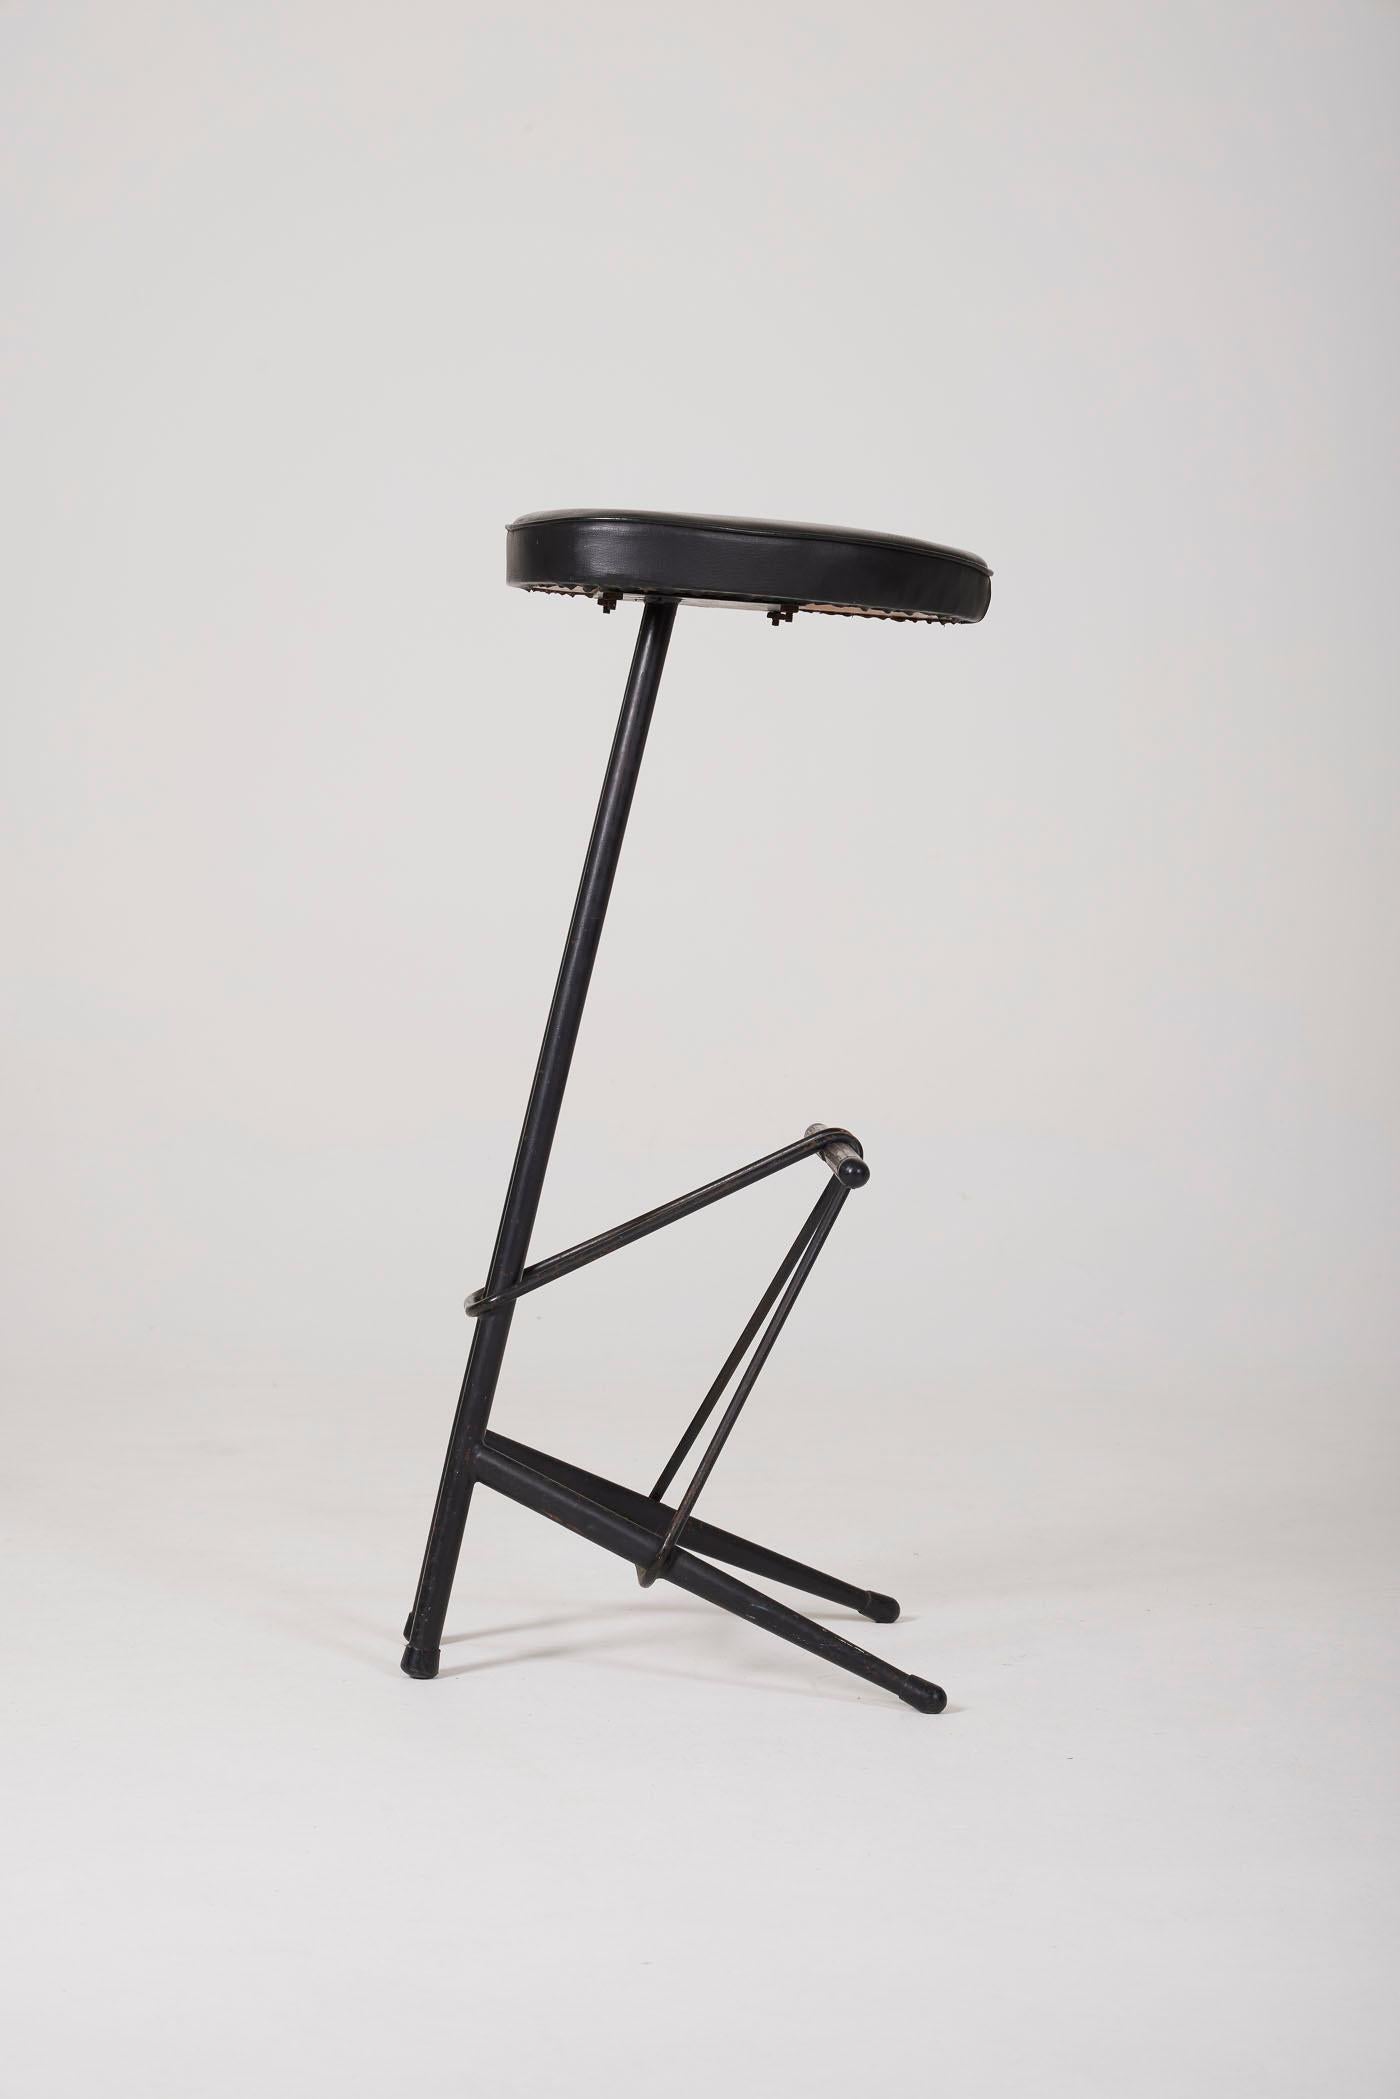 Willy Van der Meeren high stool In Good Condition For Sale In PARIS, FR